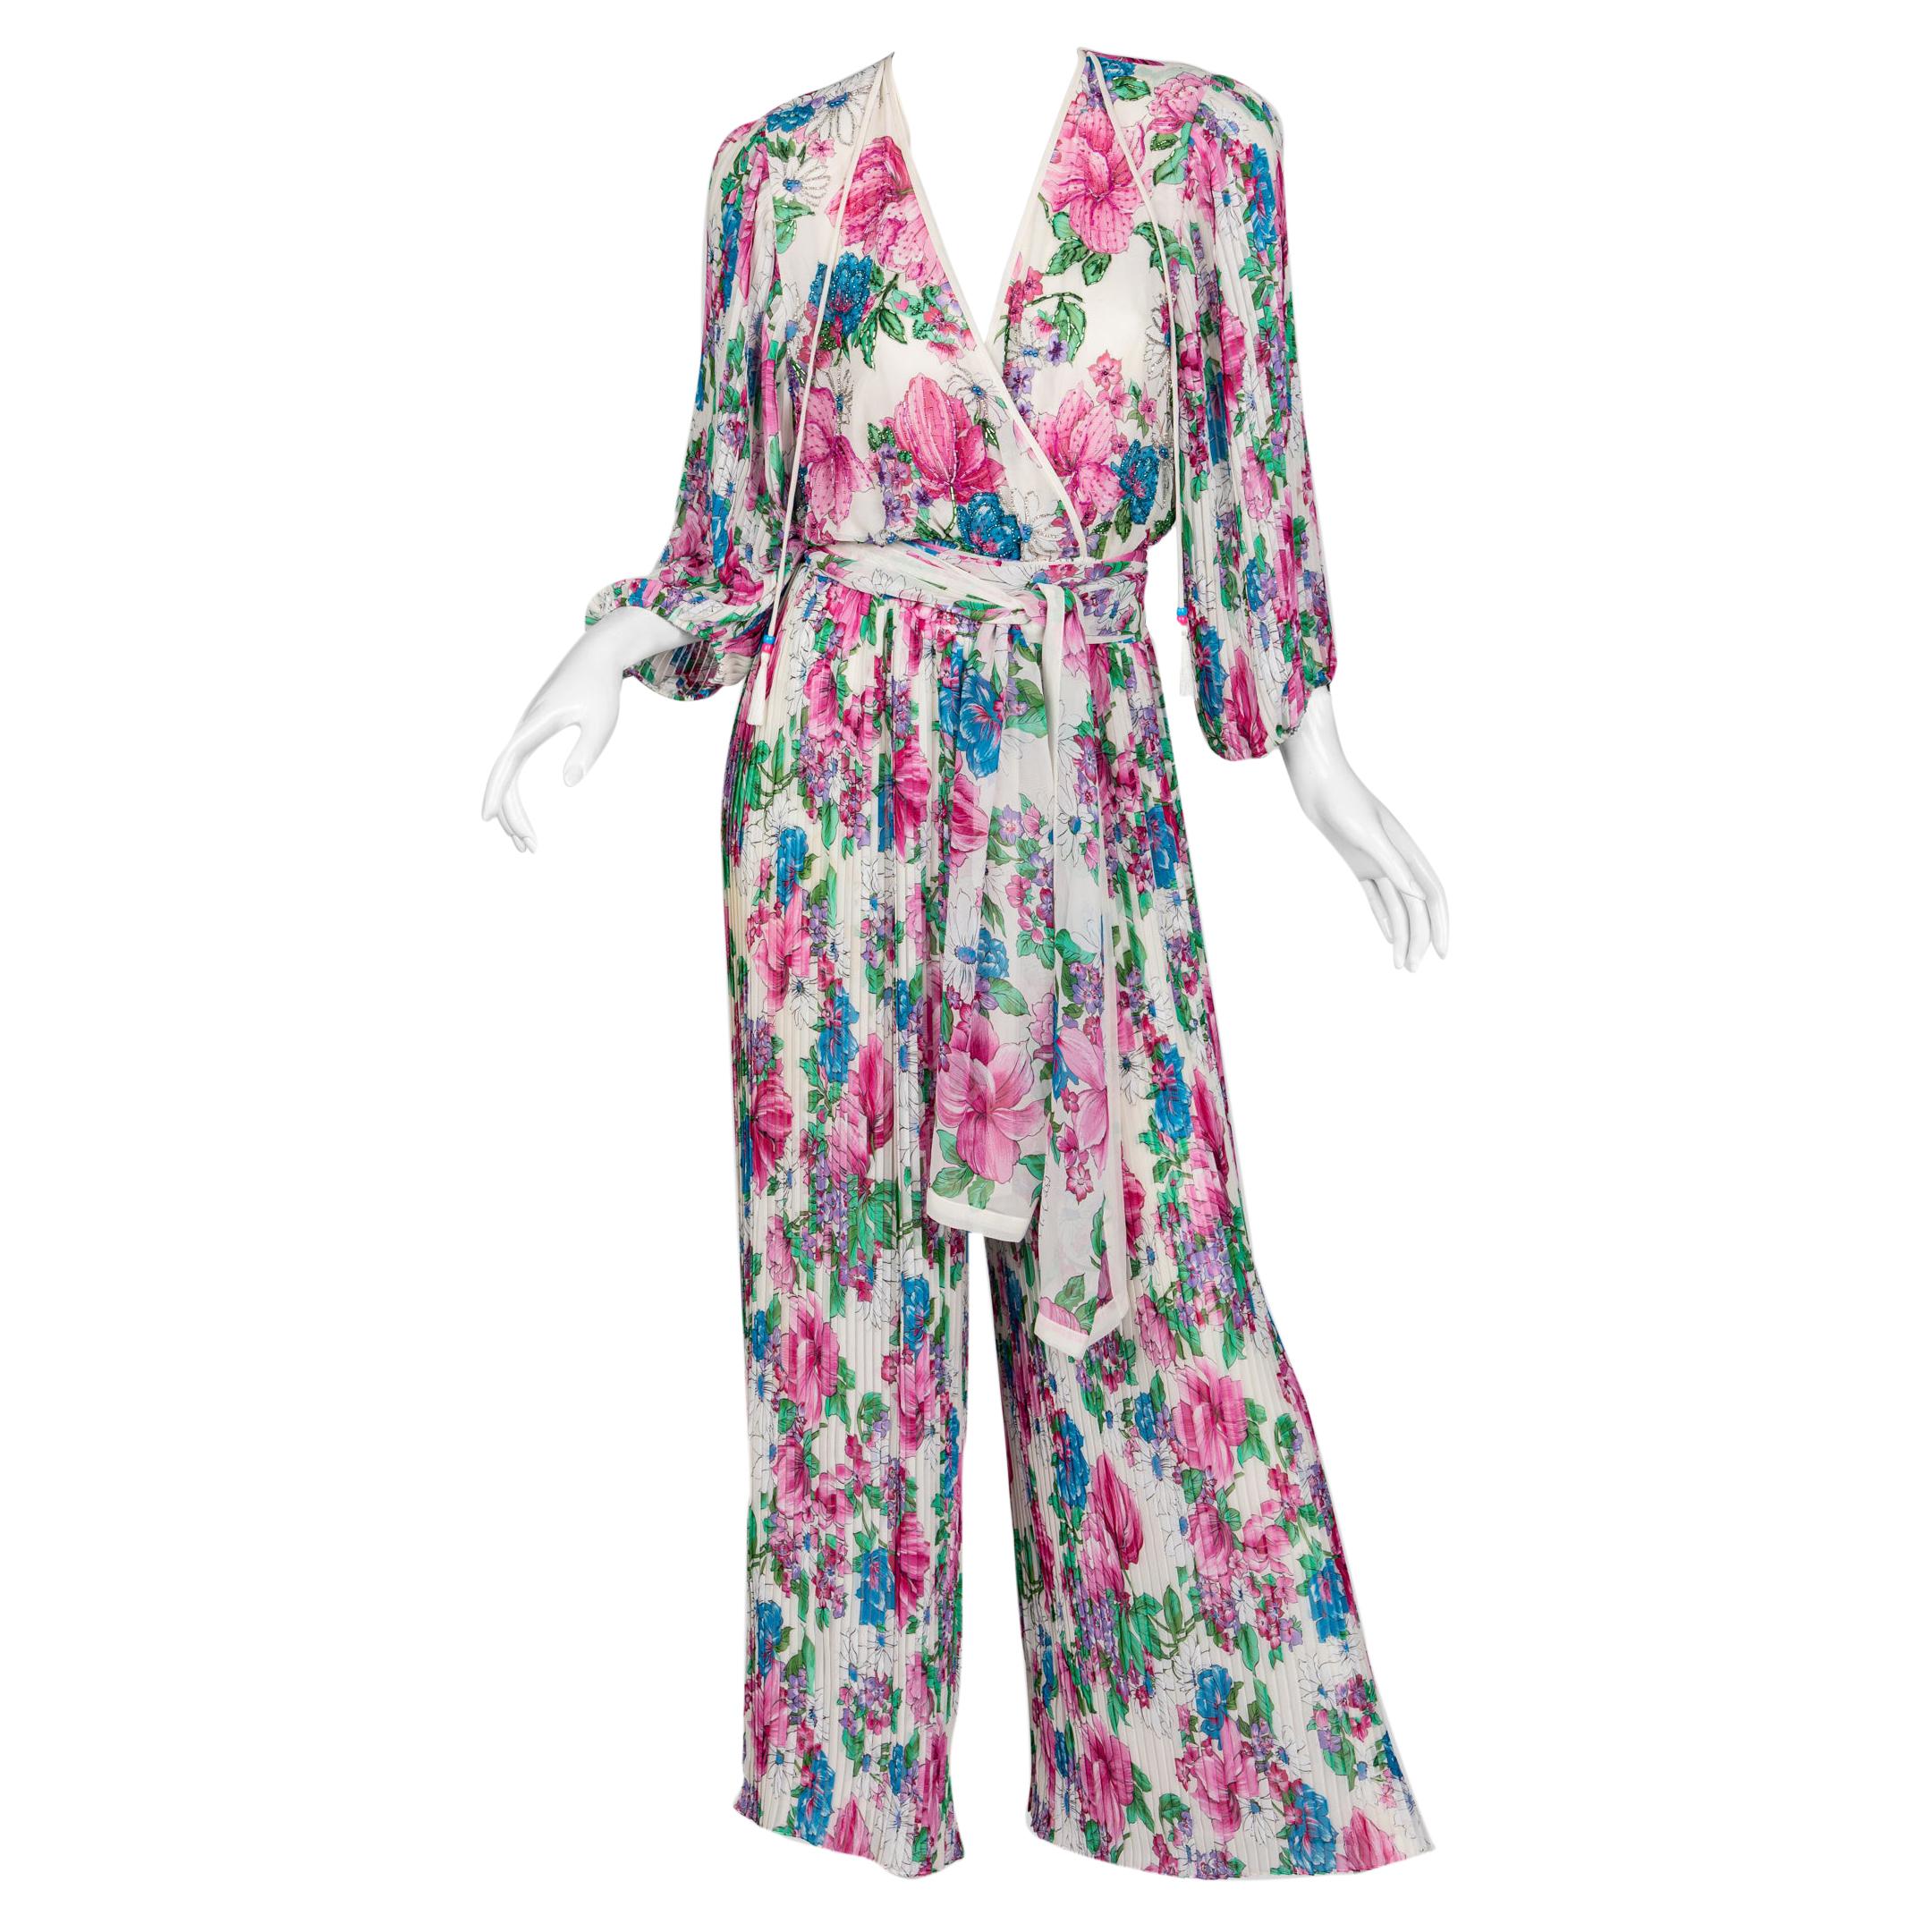  Diane Freis Floral Chiffon Jumpsuit, 1980s For Sale